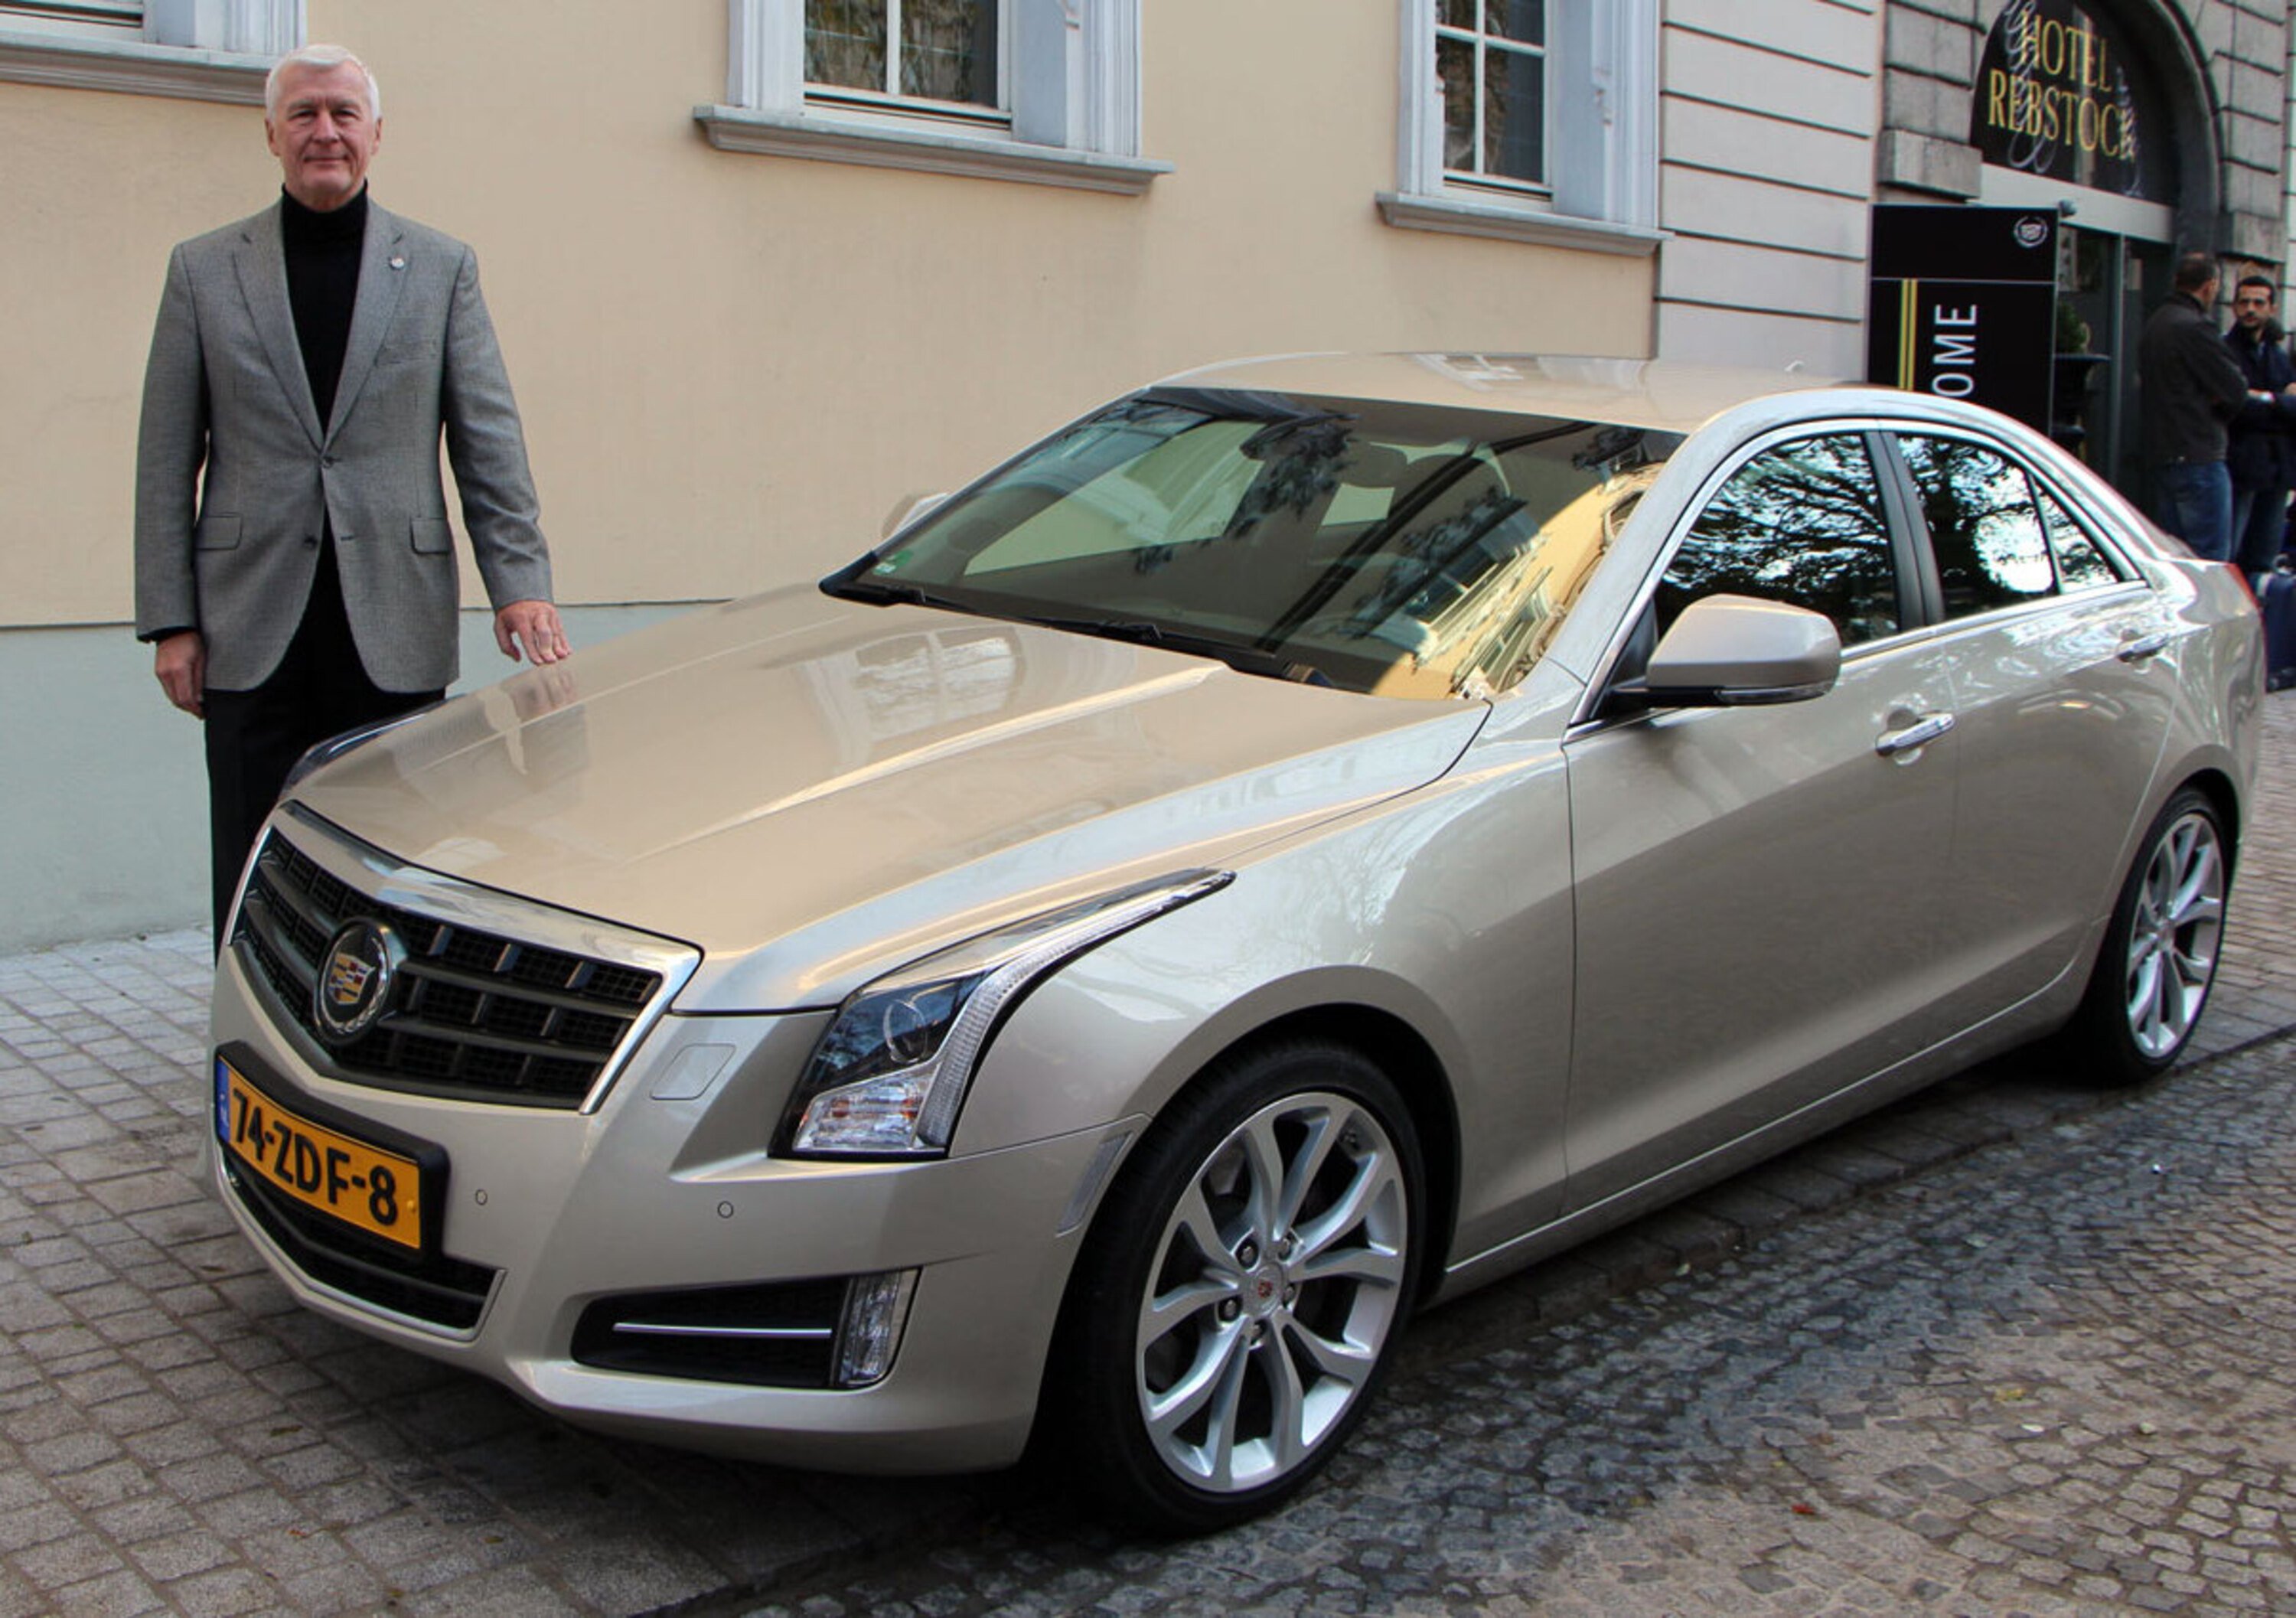 Wolfgang Schubert: &laquo;La nuova Cadillac ATS &egrave; un&#039;auto capace di emozionare&raquo;